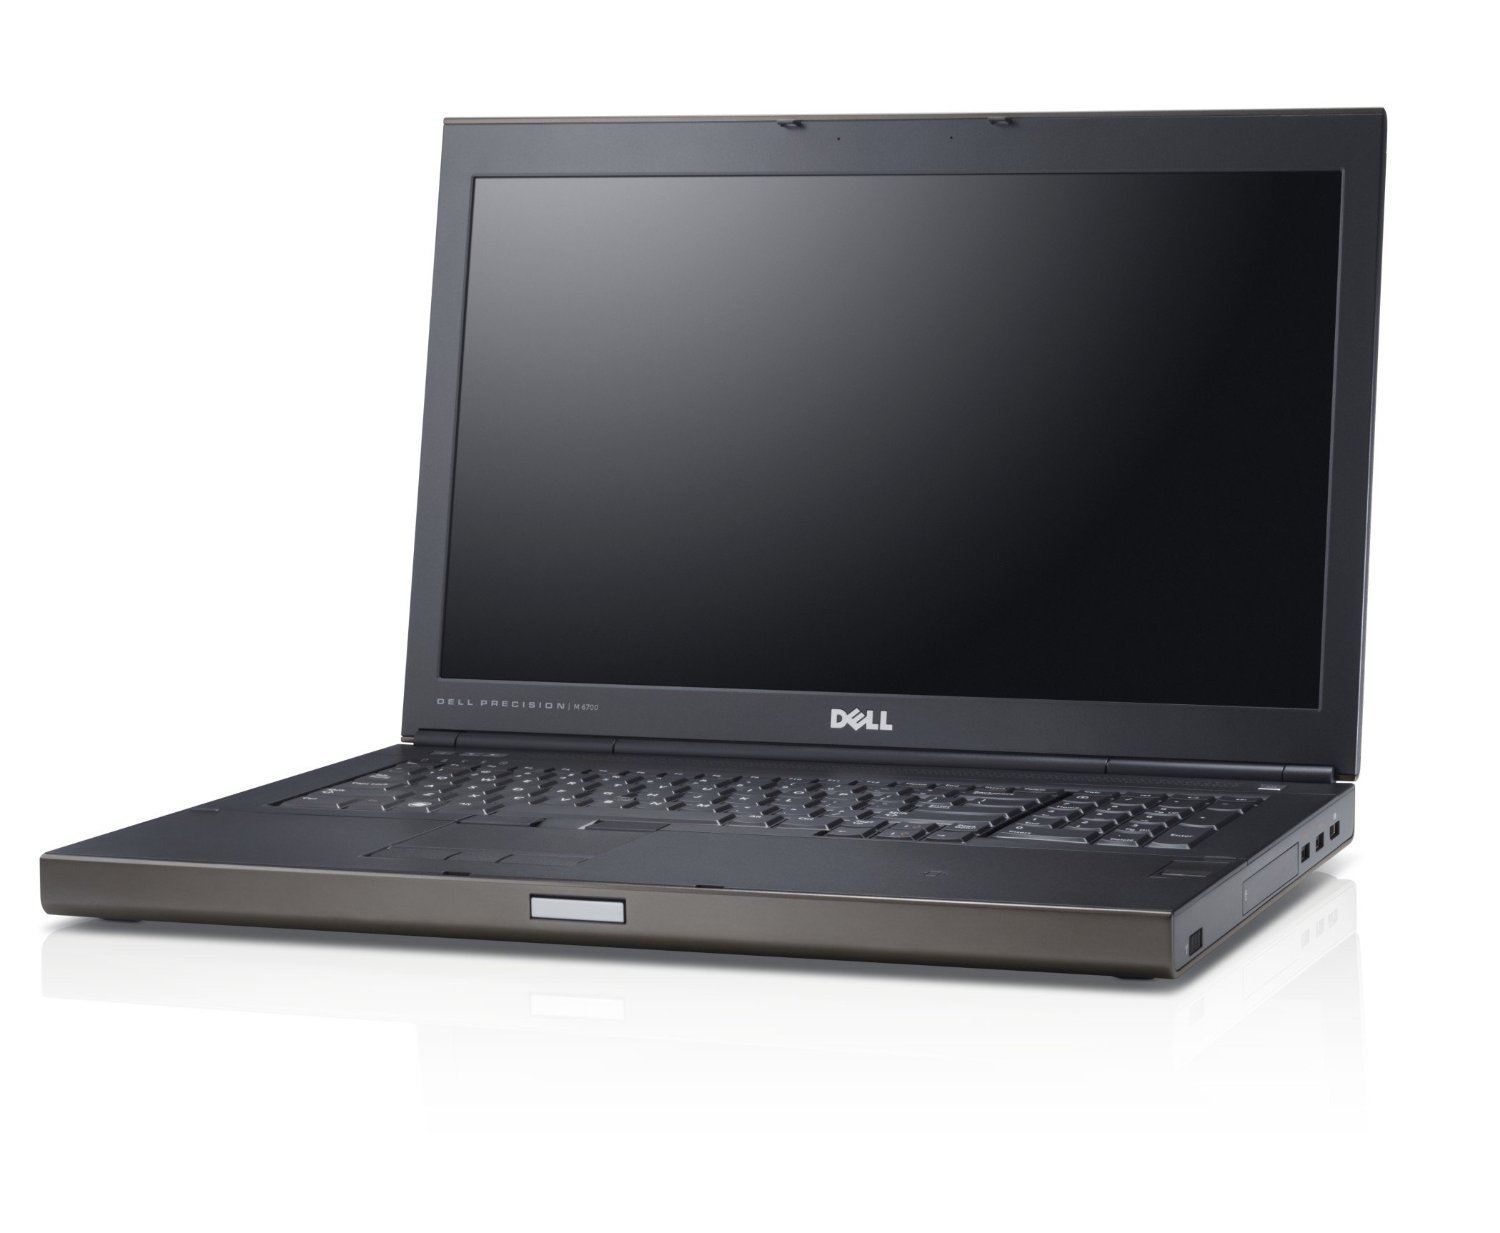  Dell Precision M6800 Dört Çekirdek  Notebook